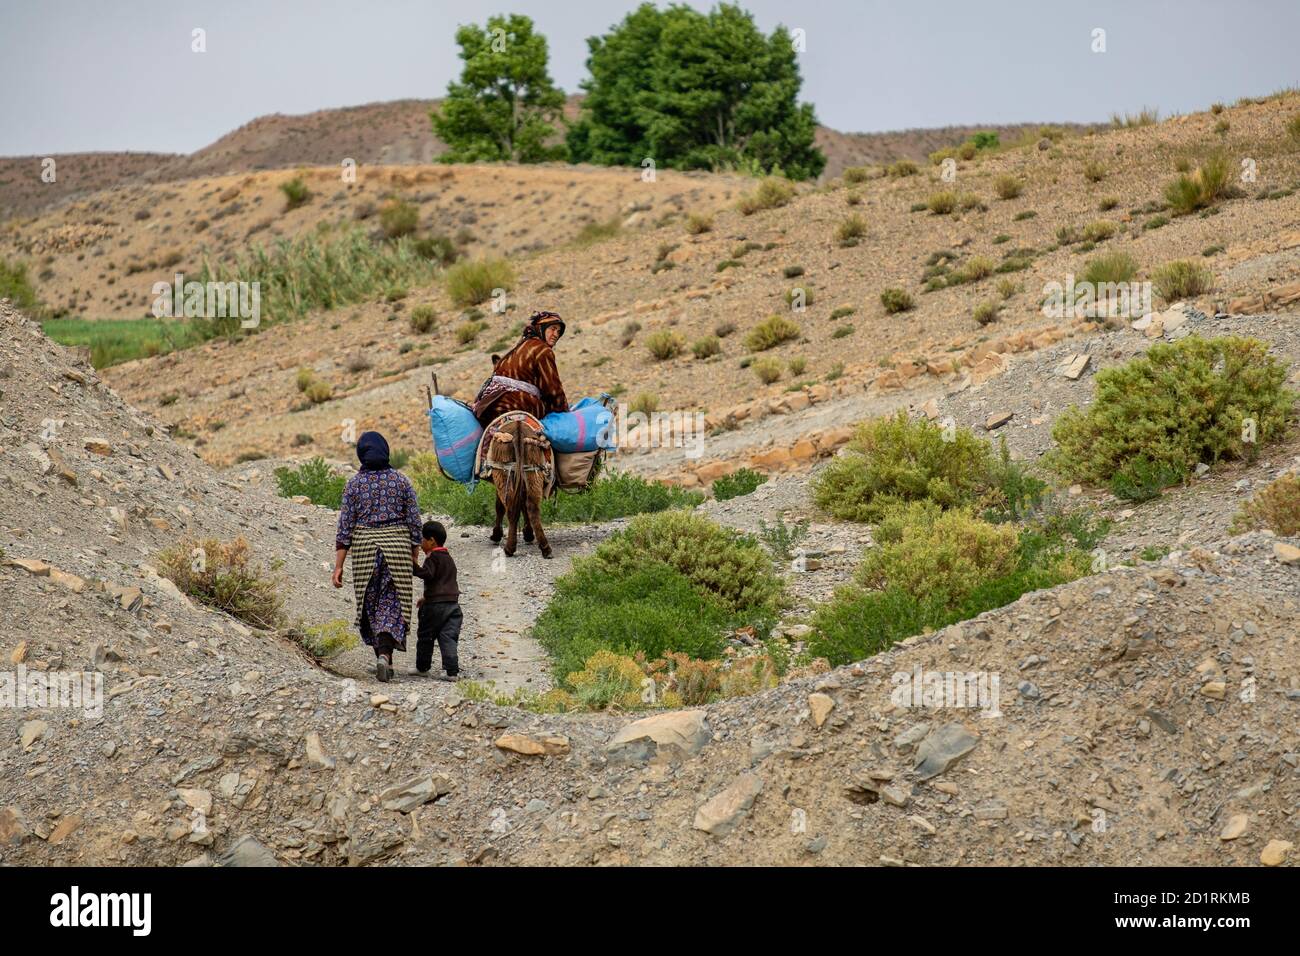 mujeres regresando del campo, Amellagou, alto Atlas, Marruecos, Africa Stock Photo